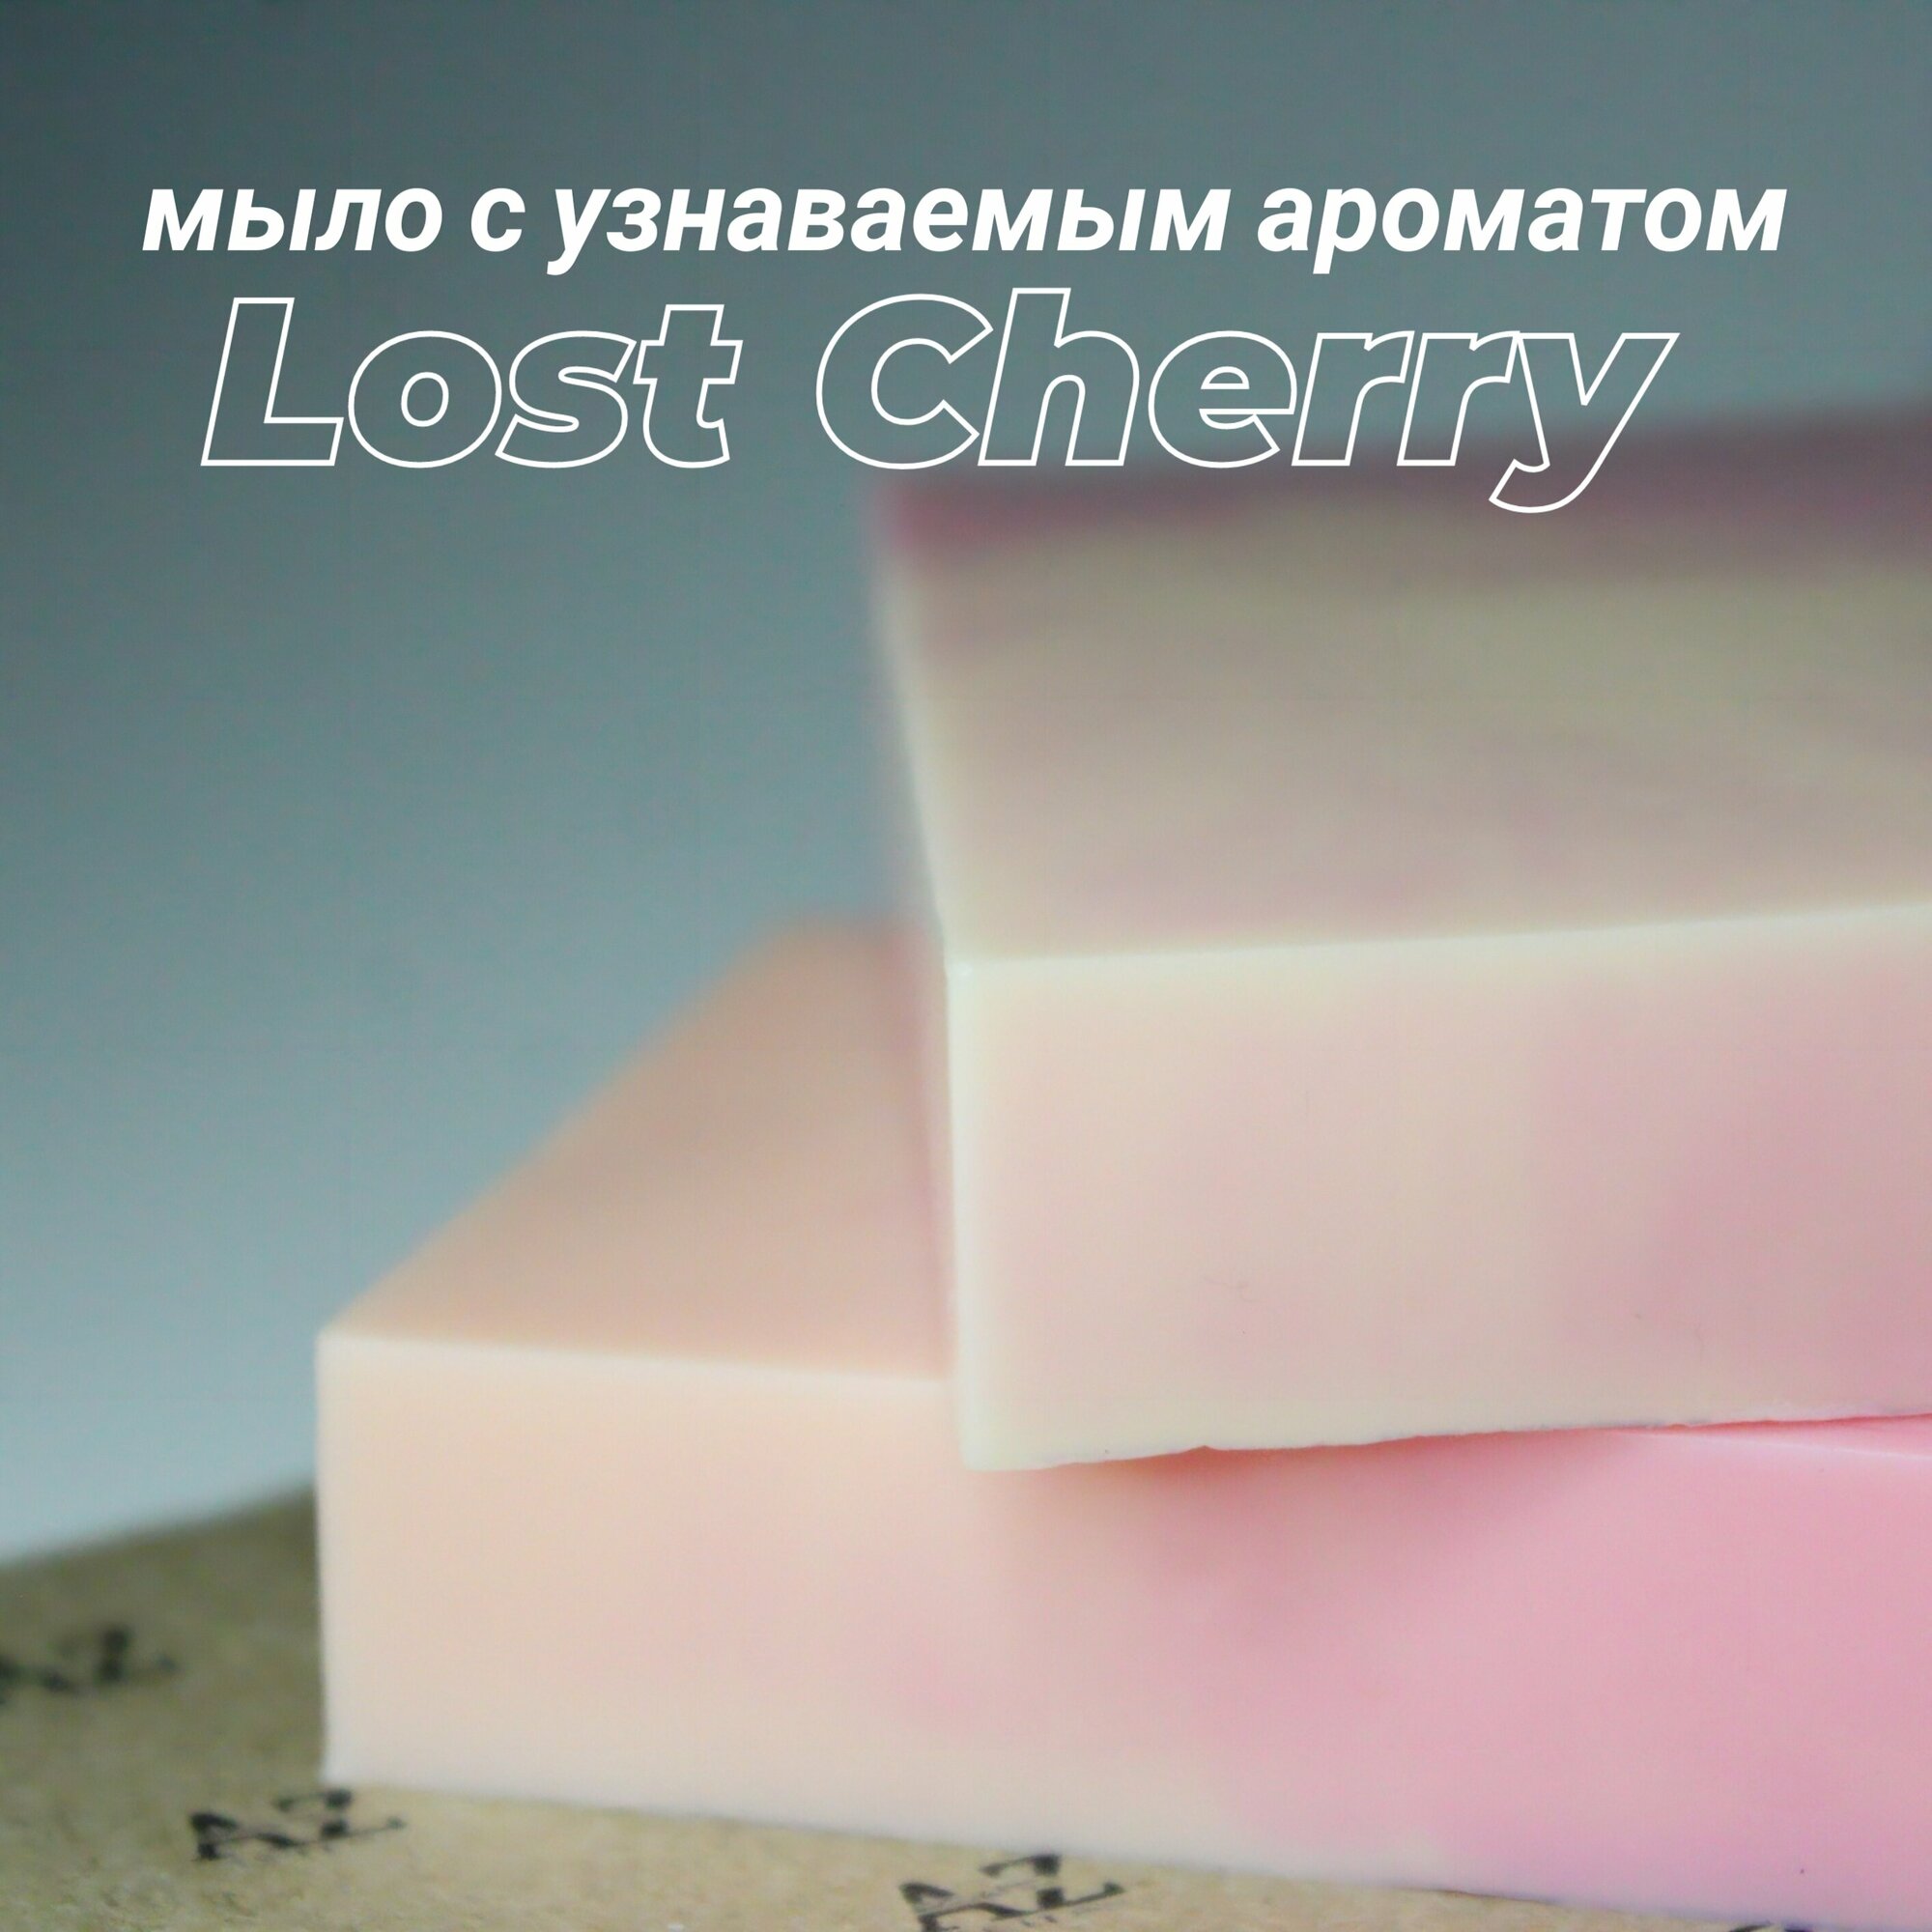 Ароматное мыло ручной работы с узнаваемым запахом "Lost cherry", 1 шт.